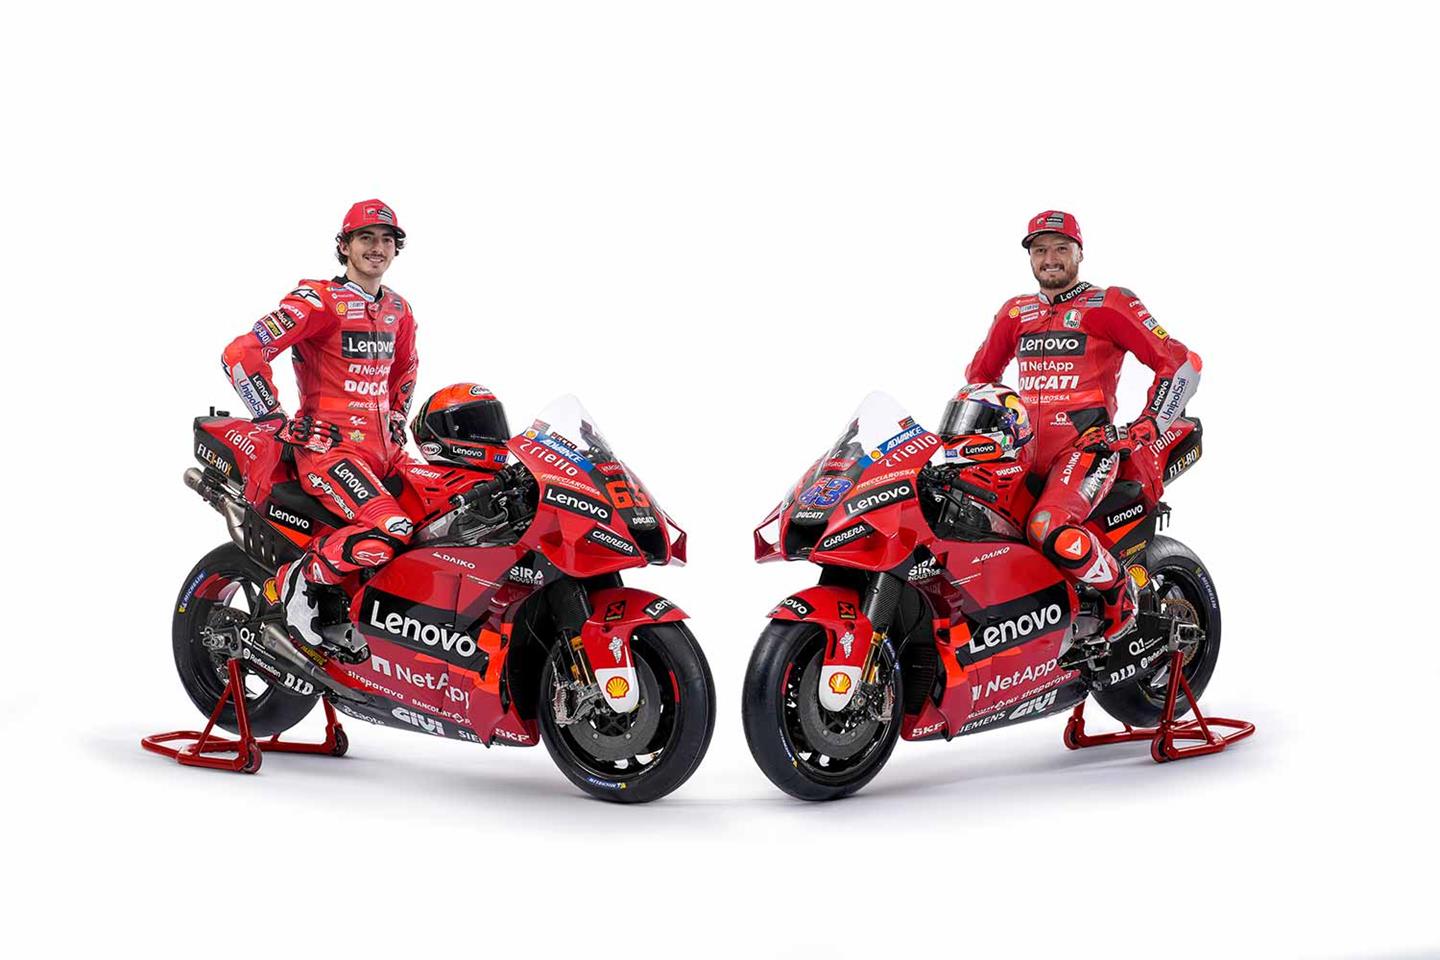 MotoGP Ducati unveil the 2022 Desmosedici GP livery MCN